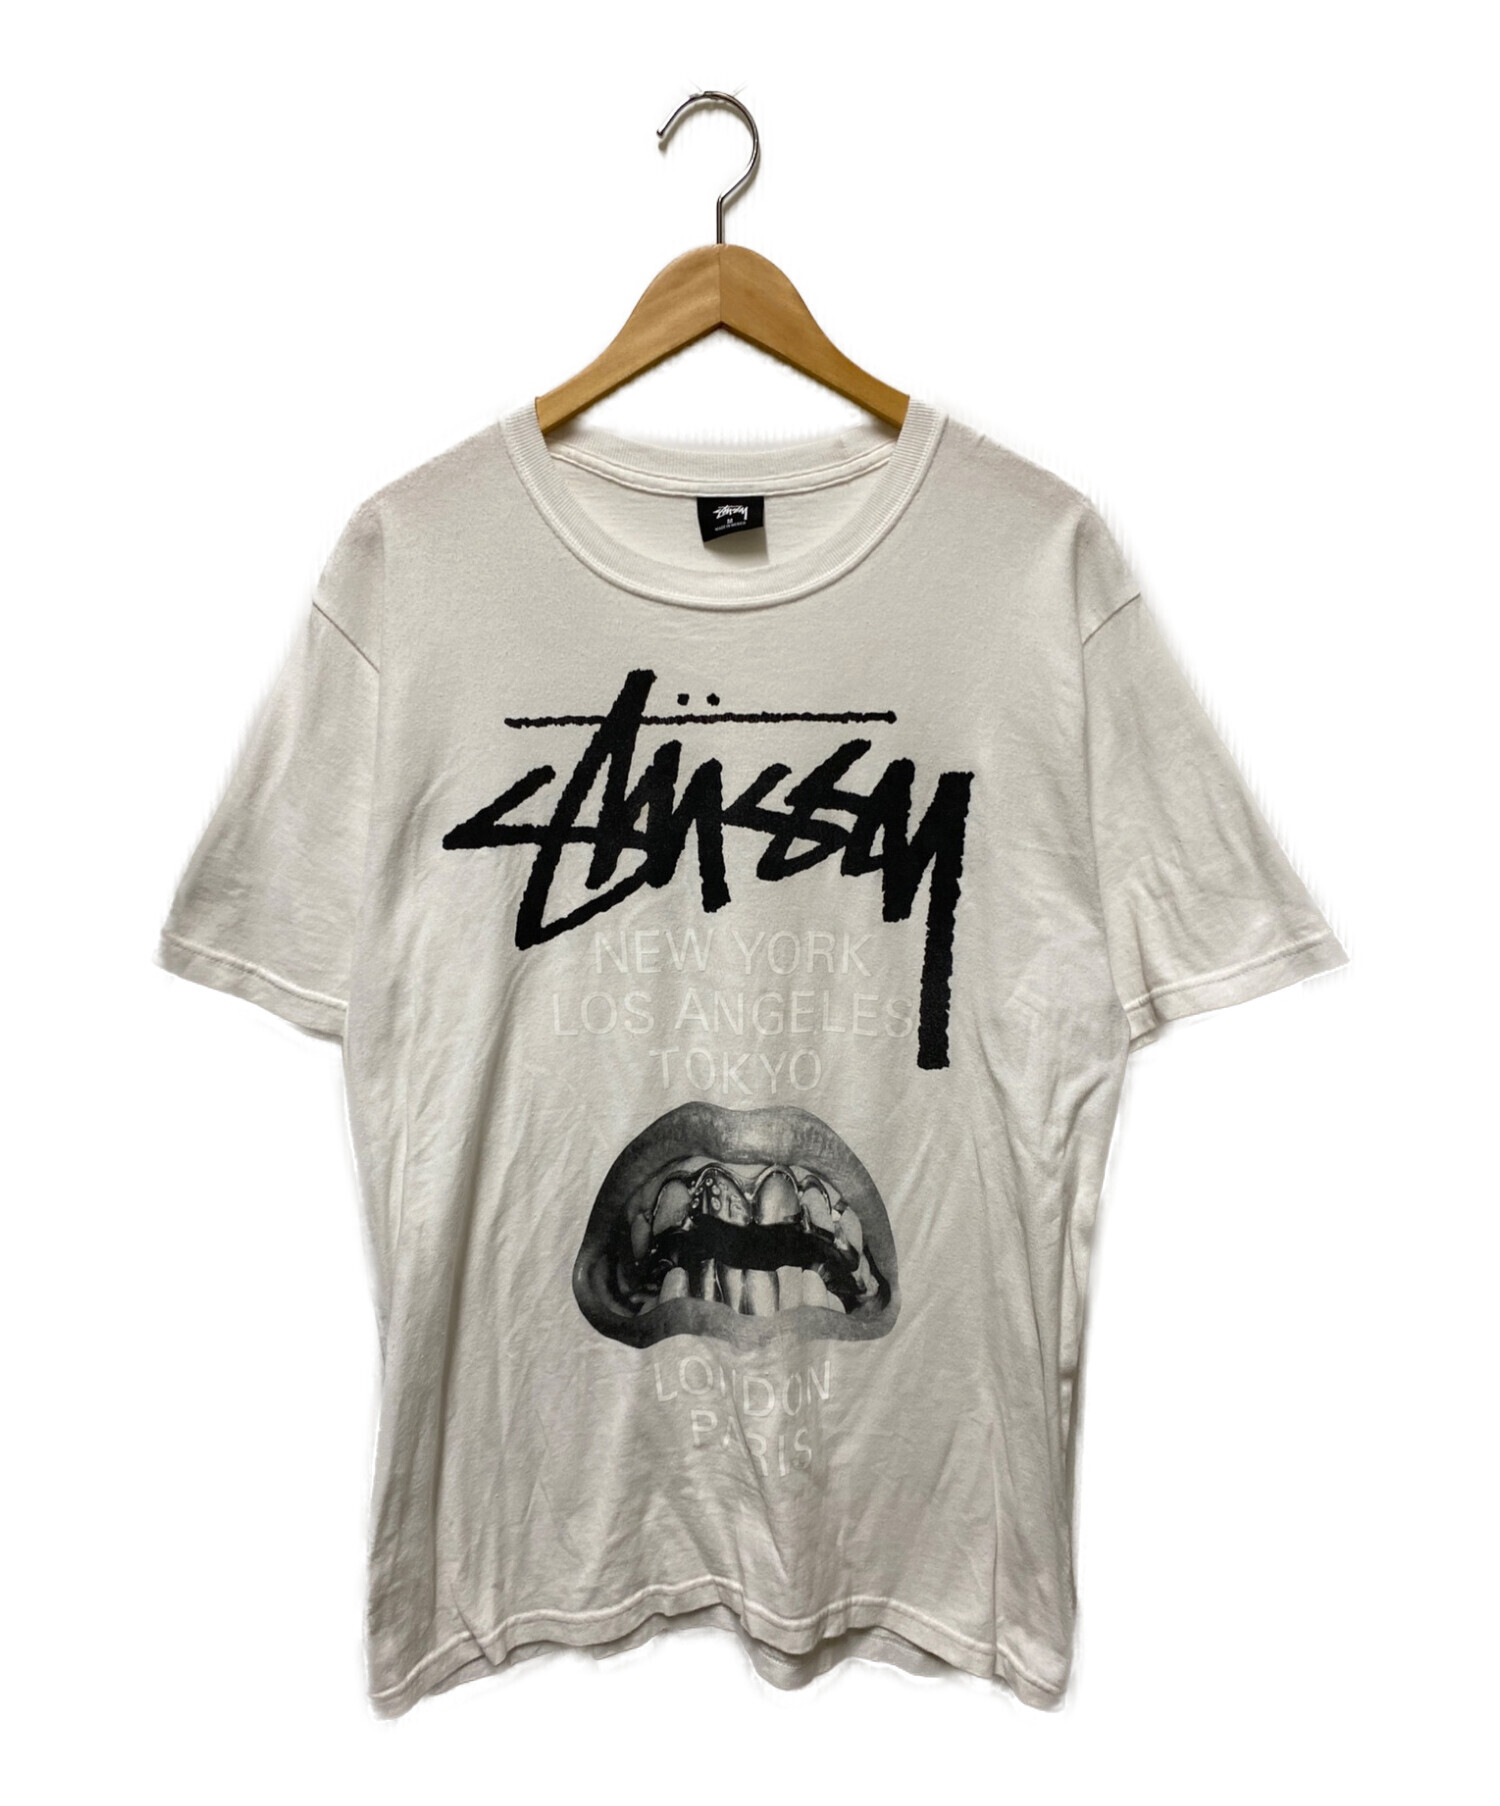 Stussy x Rick Owens (ステューシー×リックオウエンス) World Tour Collection T-shirt ホワイト  サイズ:М